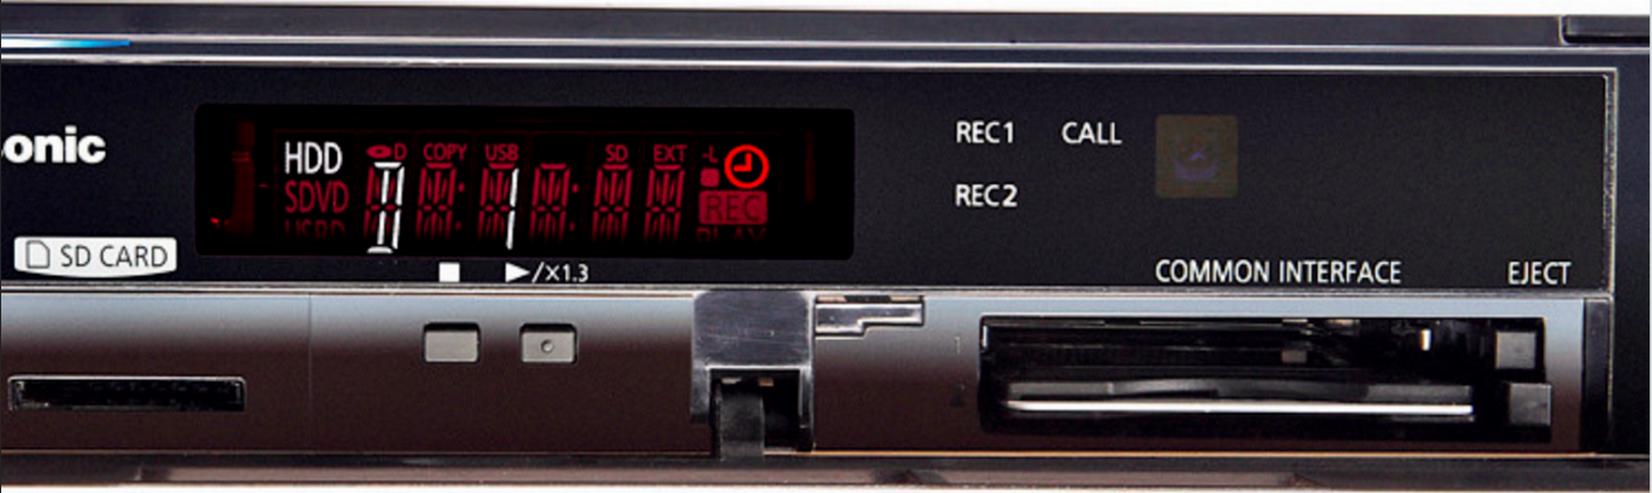 BluRay Recorder Panasonic DMR-BST 700 - Heimkino - Bild 3